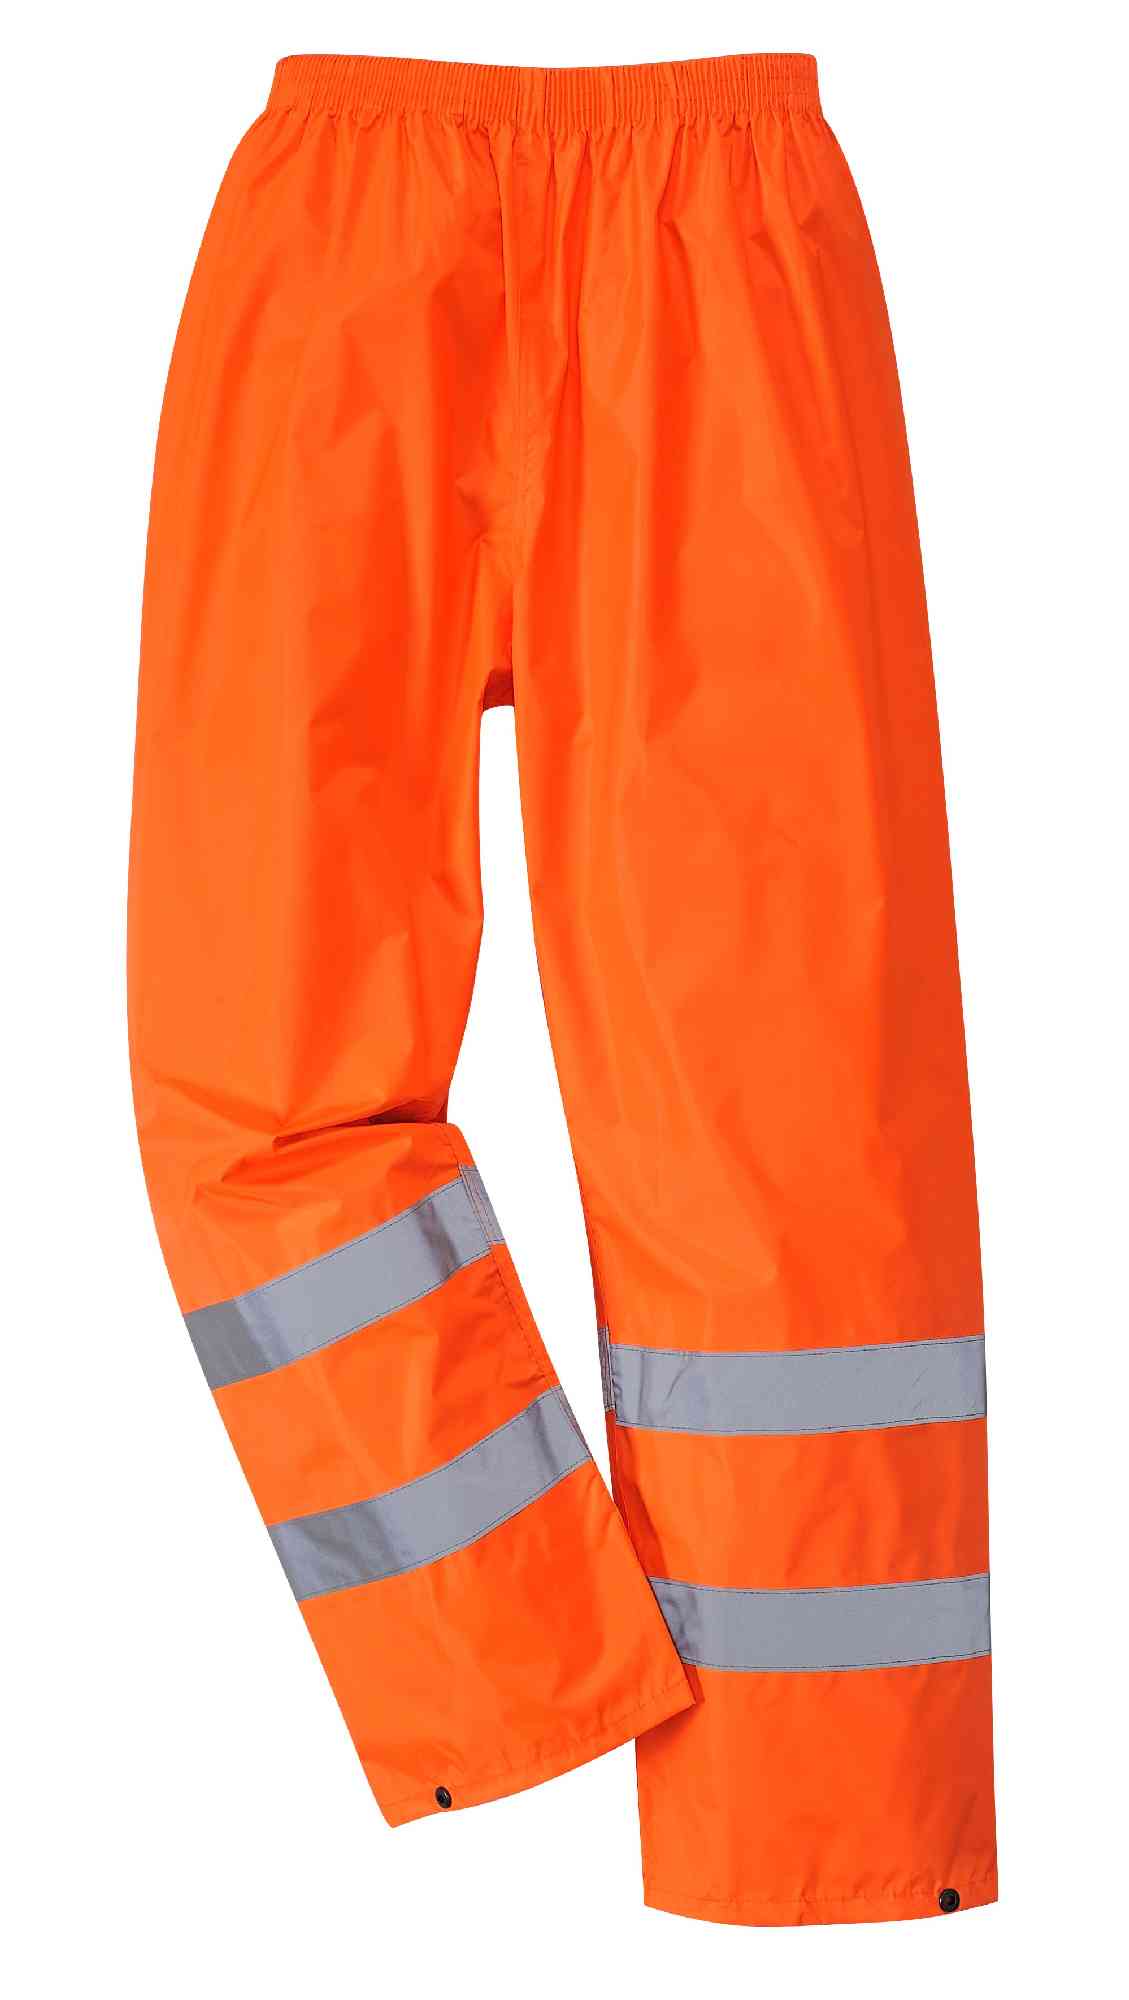 Portwest H441 Hi Vis Work Trousers Waterproof Rain Pants Orange